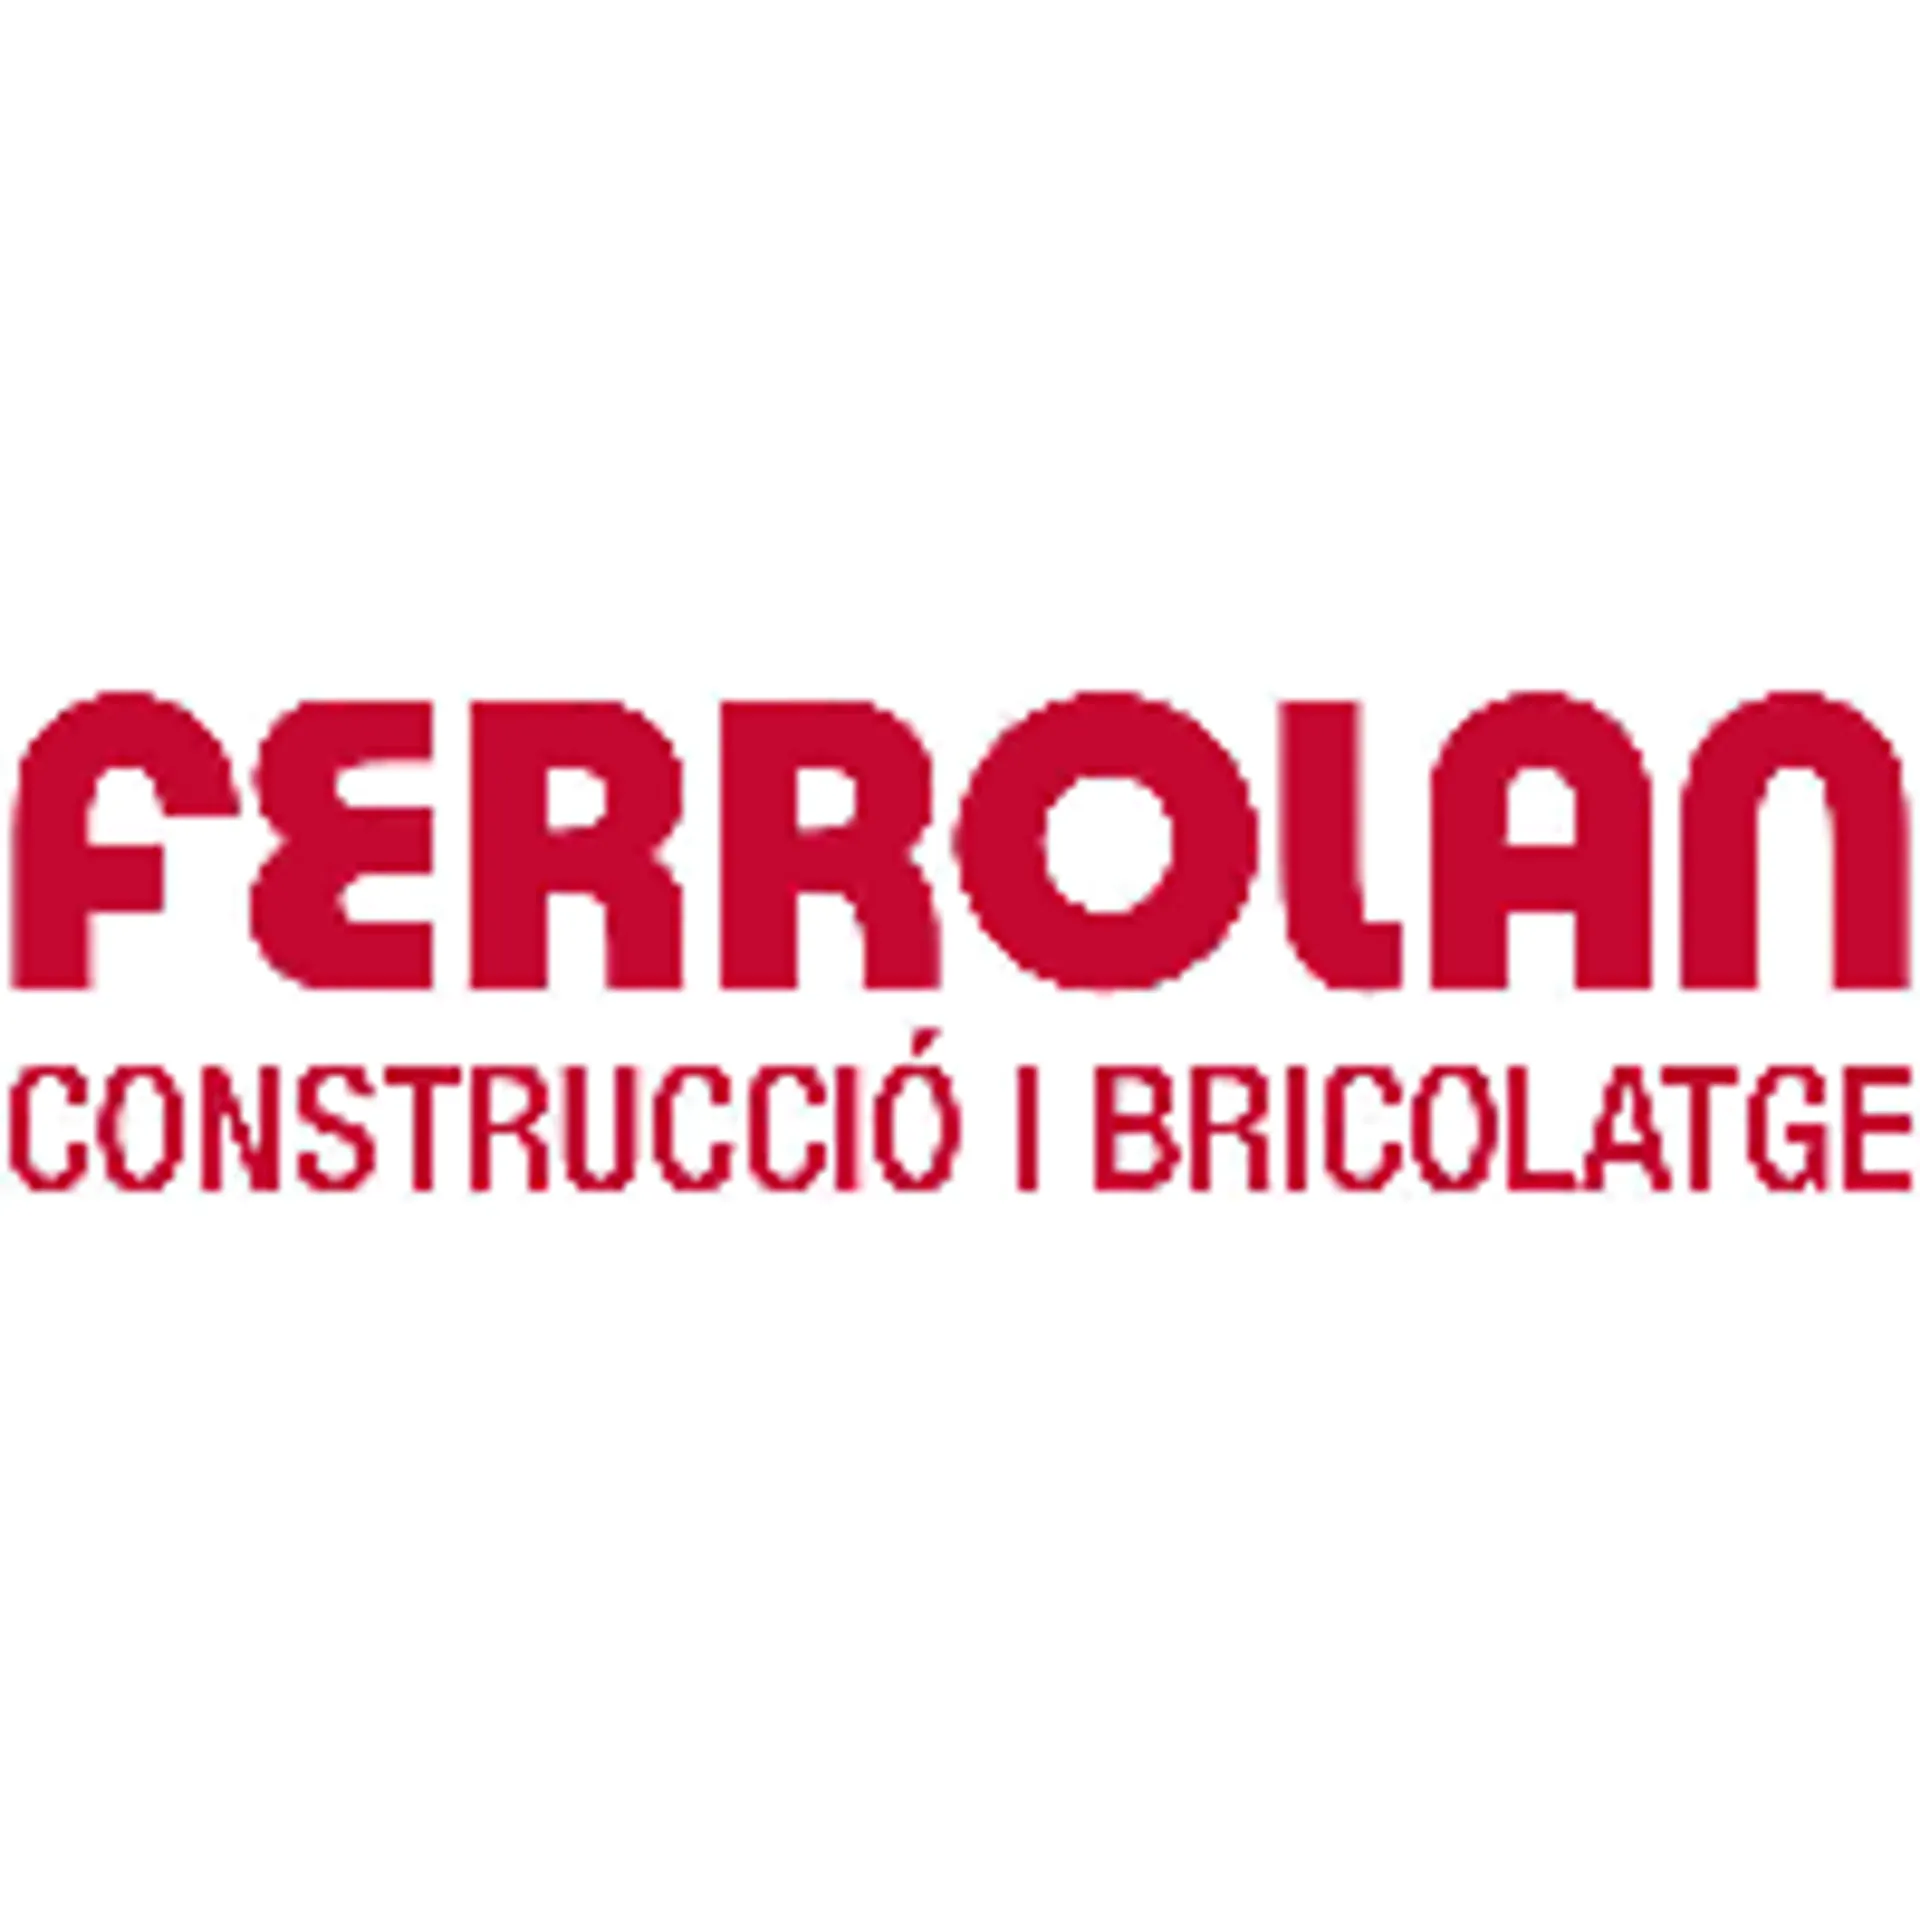 FERROLAN logo de catálogo